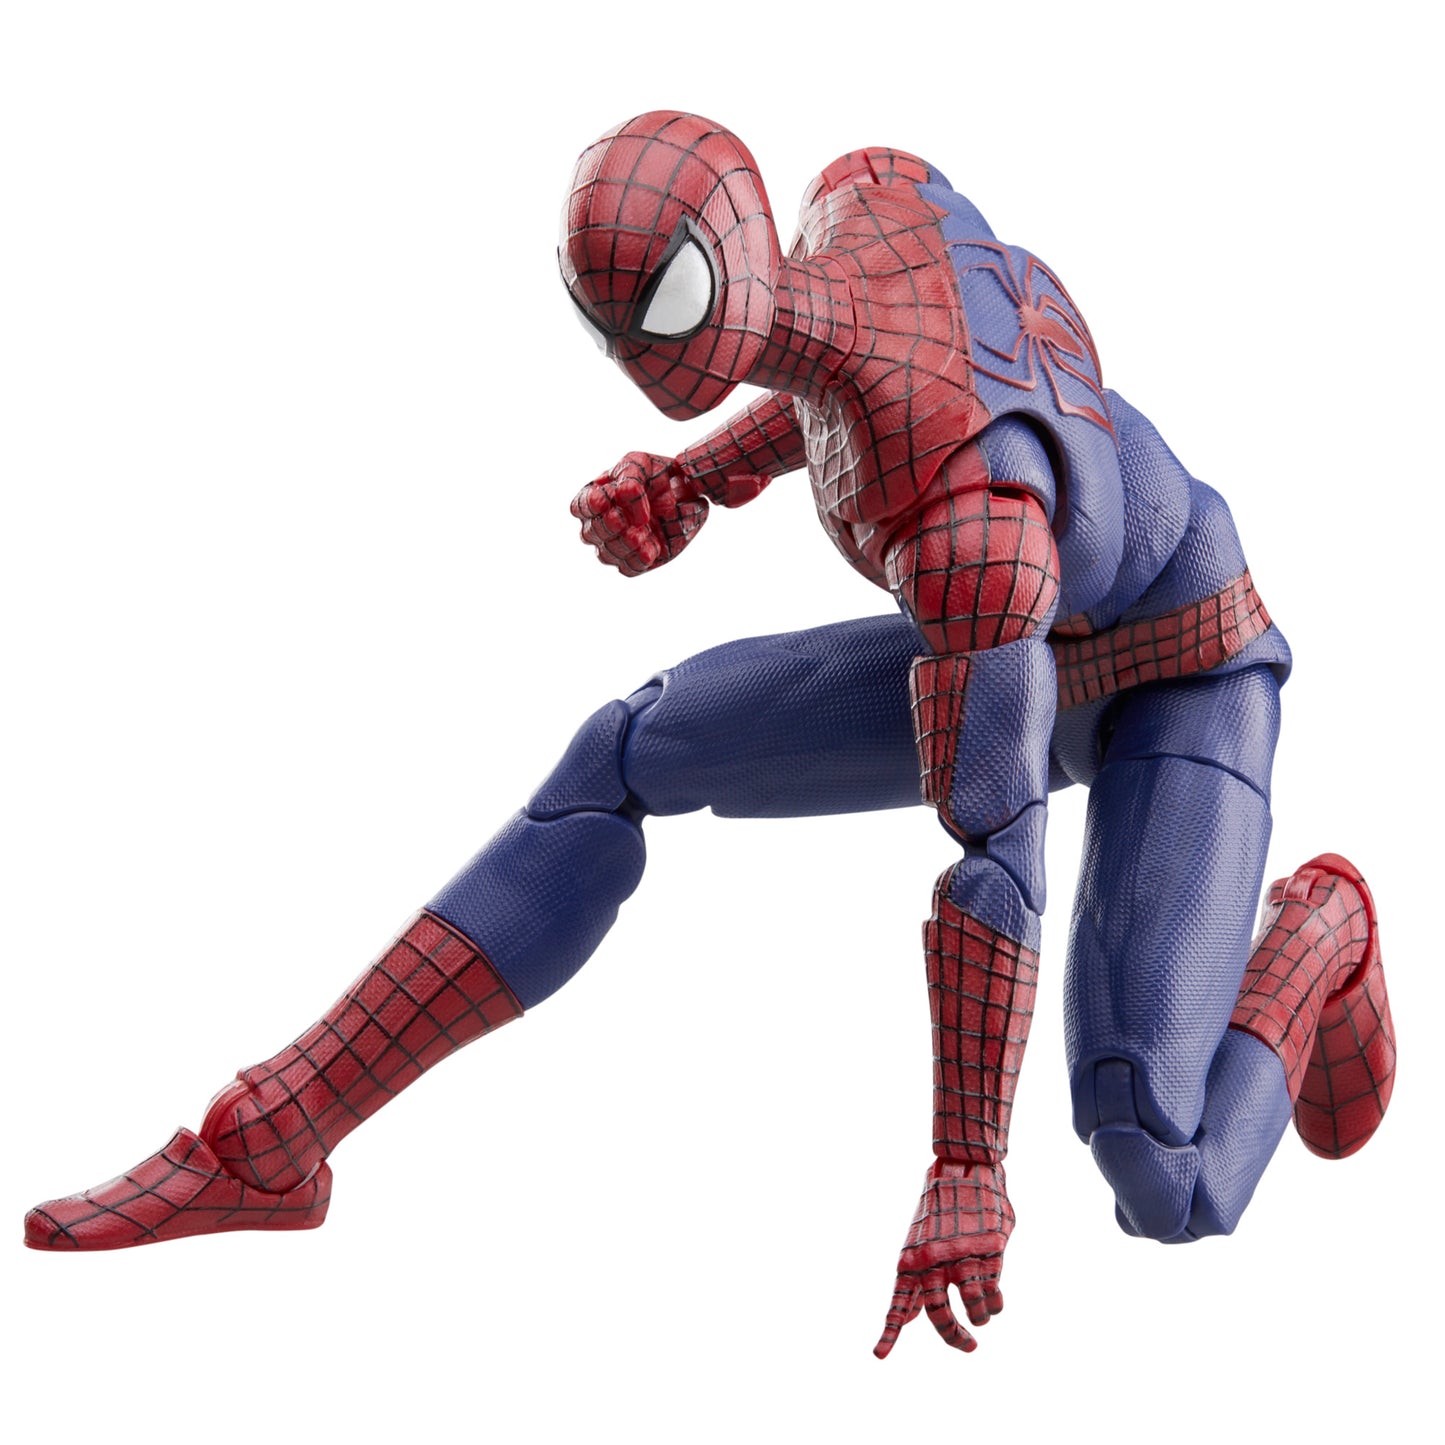 Marvel Legends Series The Amazing Spider-Man, 6" Marvel Legends Action Figures HERETOSERVEYOU